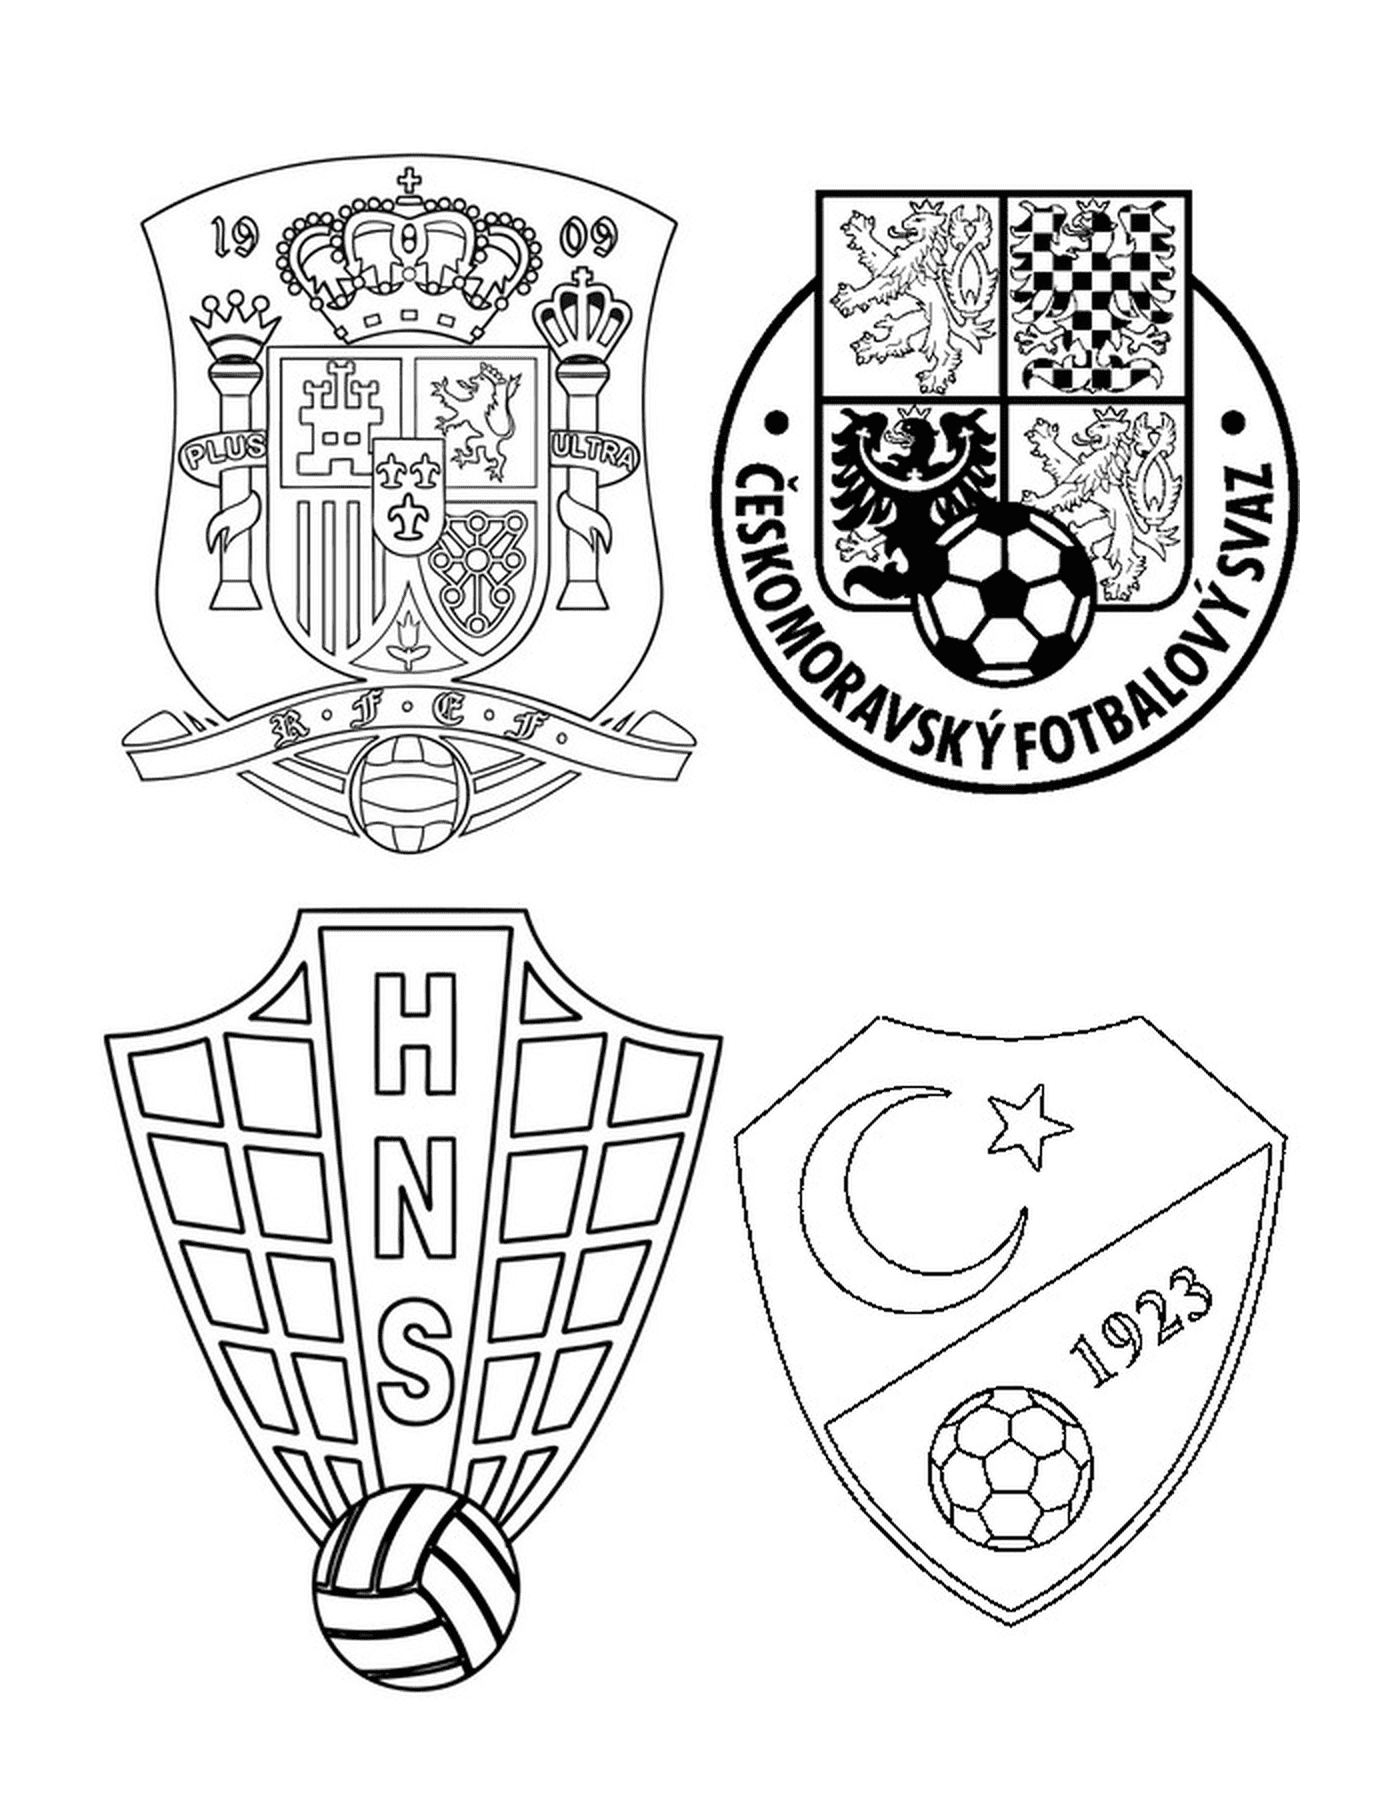   Quatre logos d'équipes de football différents 